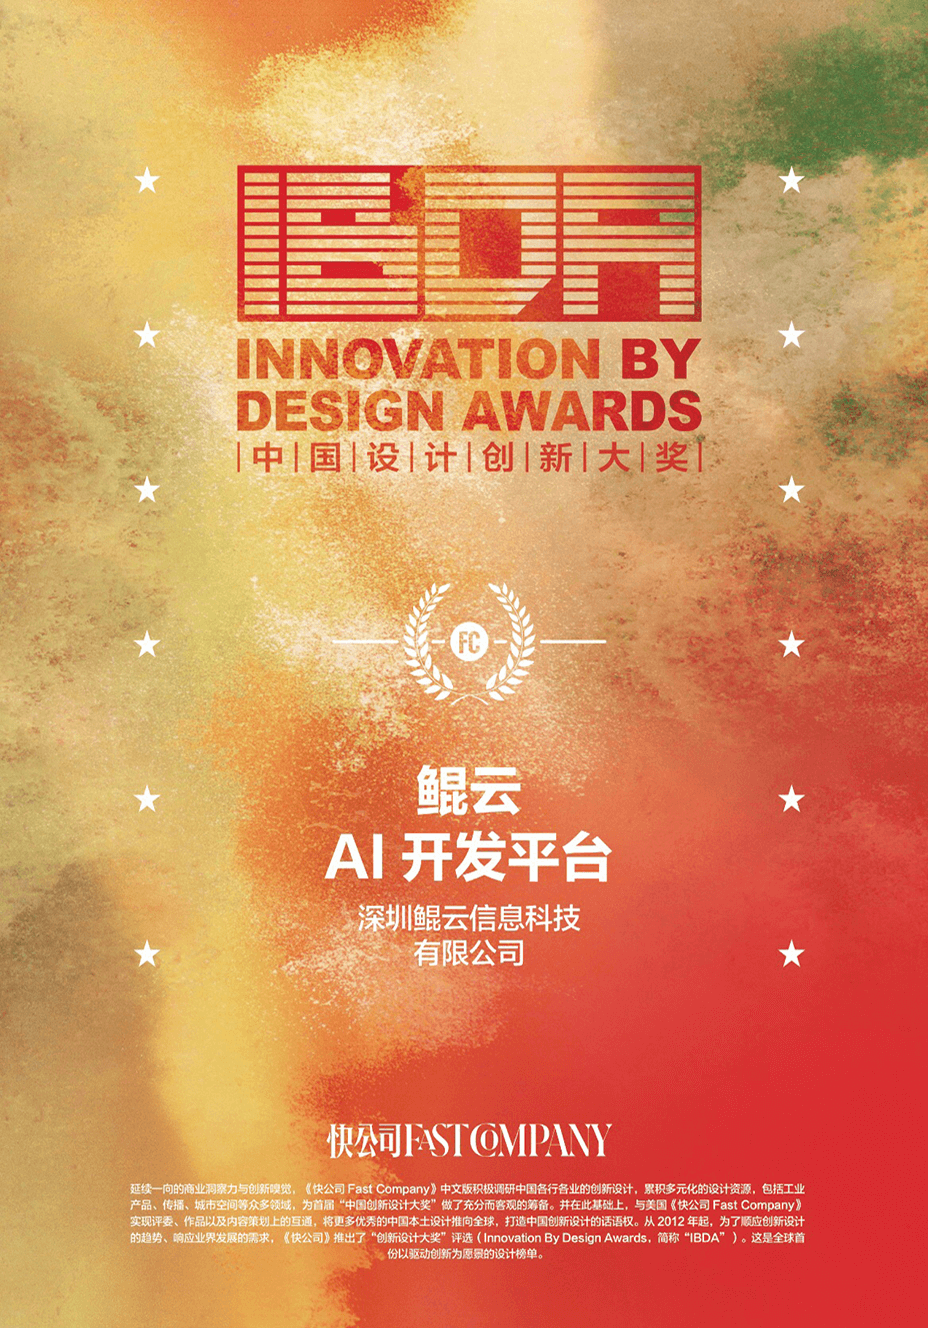 鲲云科技AI开发平台入选快公司中国设计创新榜